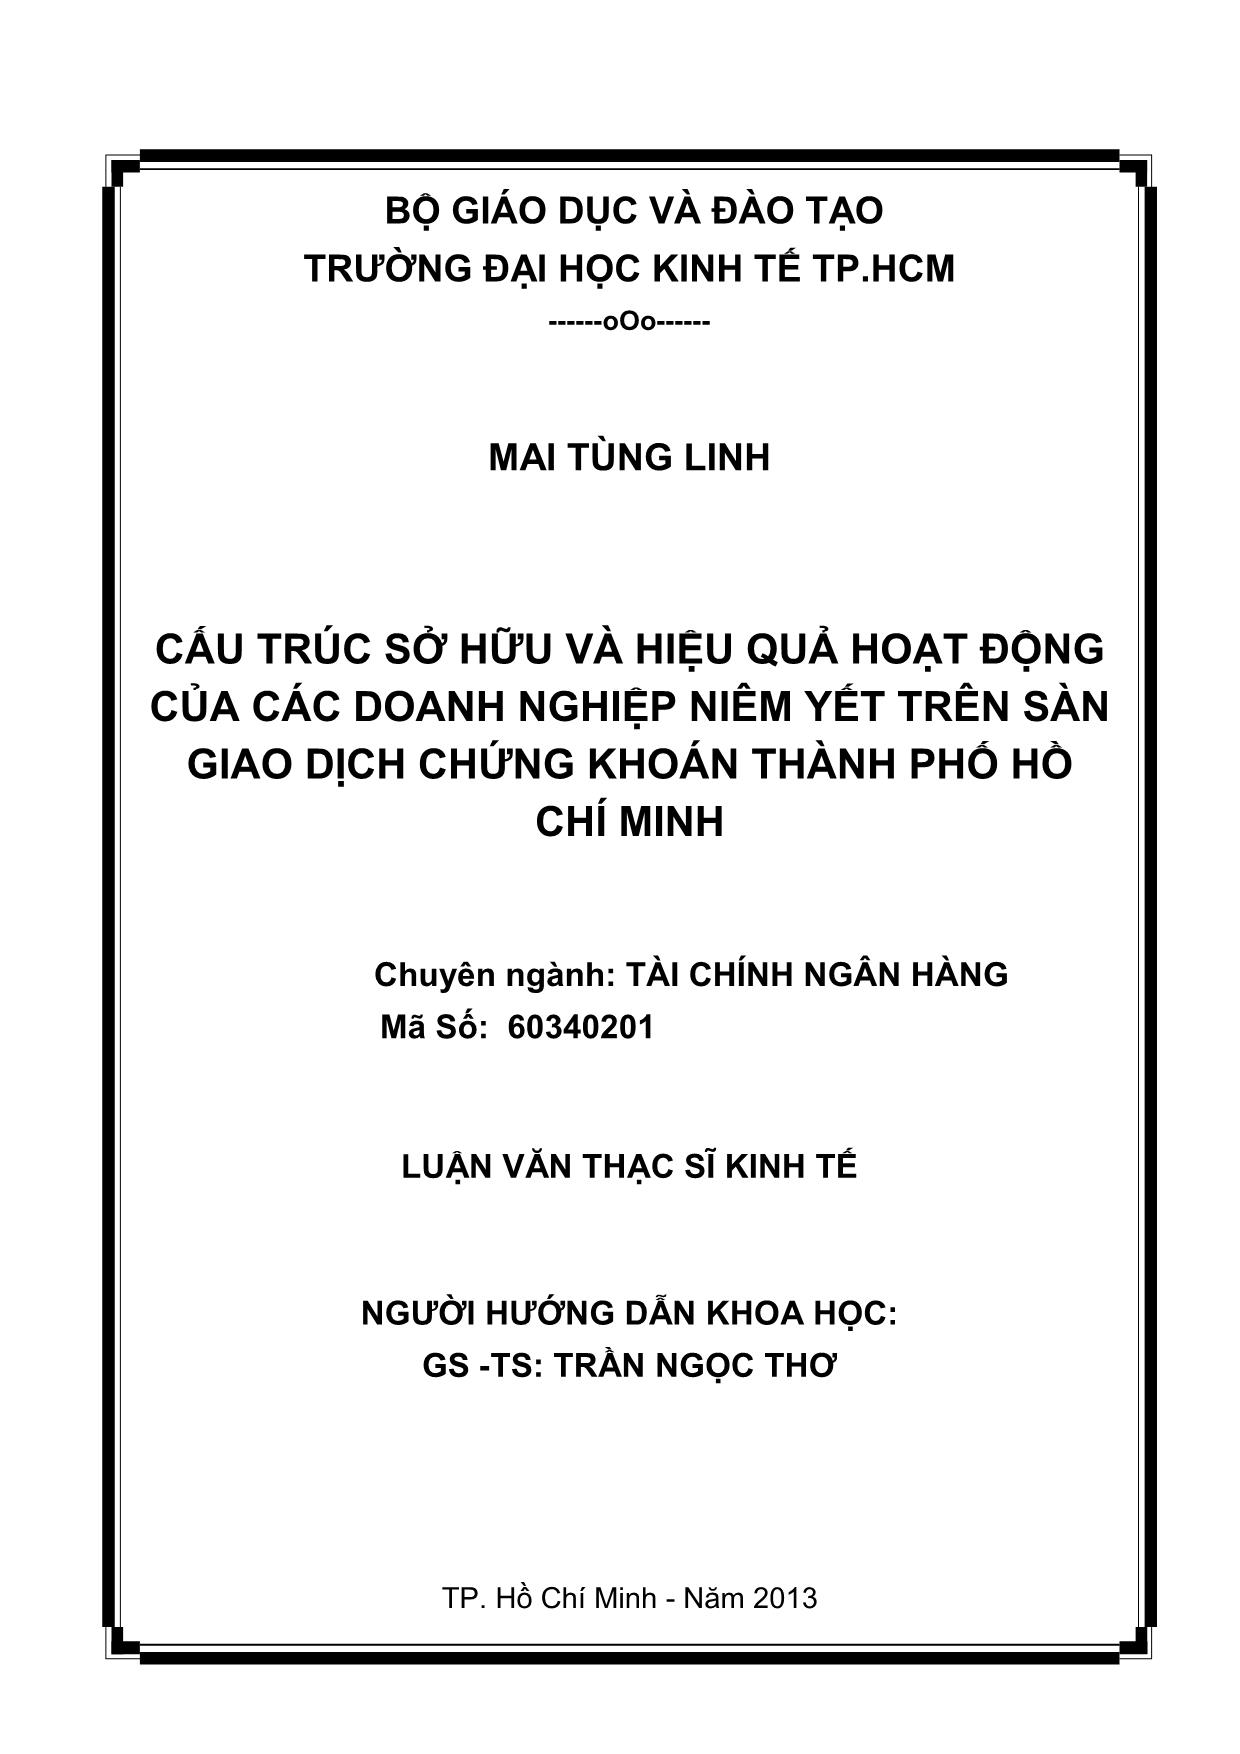 Luận văn Cấu trúc sở hữu và hiệu quả hoạt động của các doanh nghiệp niêm yết trên sàn giao dịch chứng khoán thành phố Hồ Chí Minh trang 2